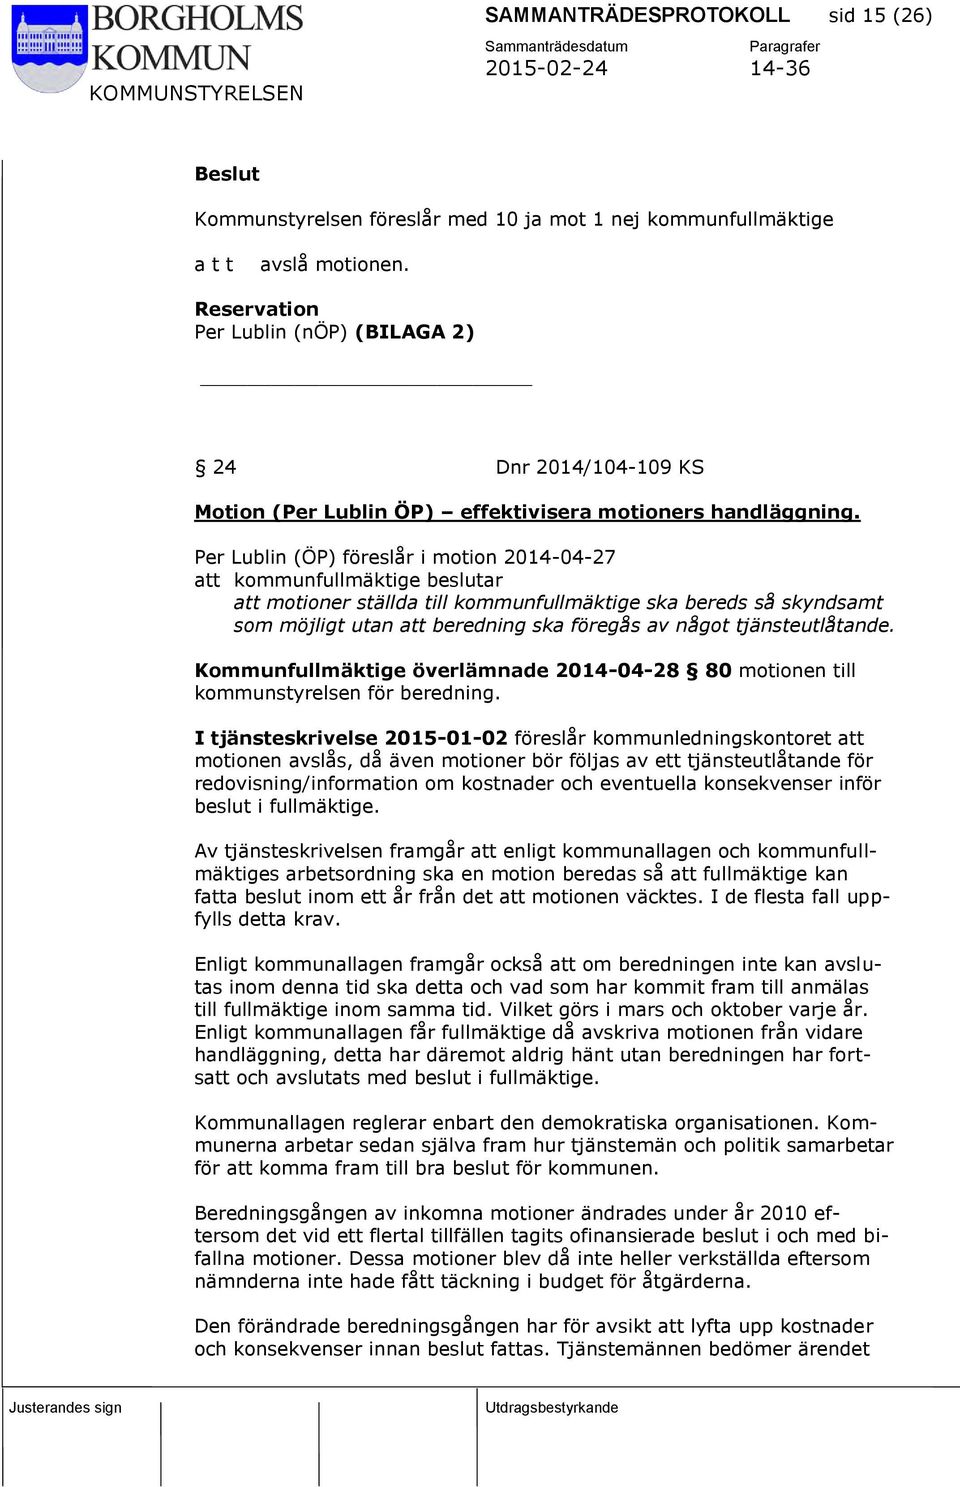 Per Lublin (ÖP) föreslår i motion 2014-04-27 att kommunfullmäktige beslutar att motioner ställda till kommunfullmäktige ska bereds så skyndsamt som möjligt utan att beredning ska föregås av något